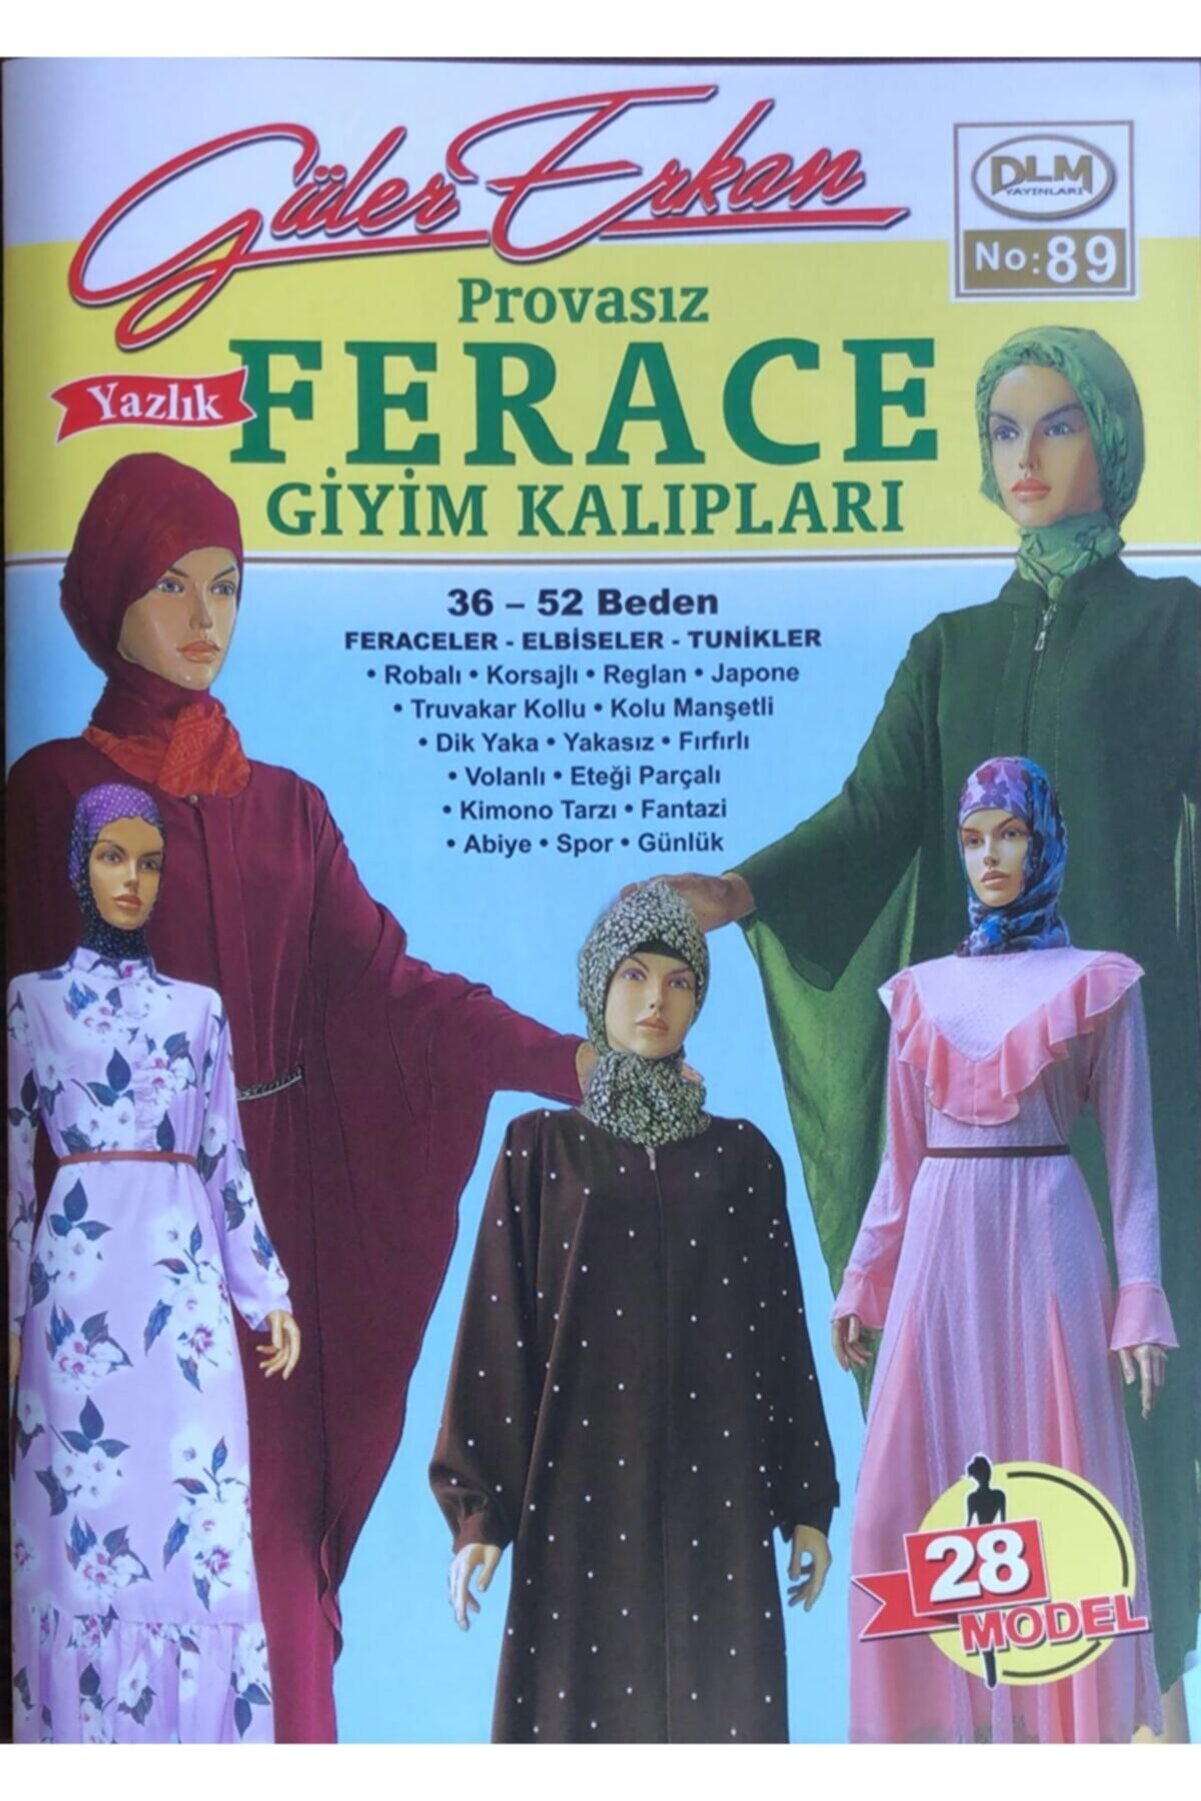 Dilem Yayınları Güler Erkan Provasız Yazlık Ferace Giyim Kalıpları No:89